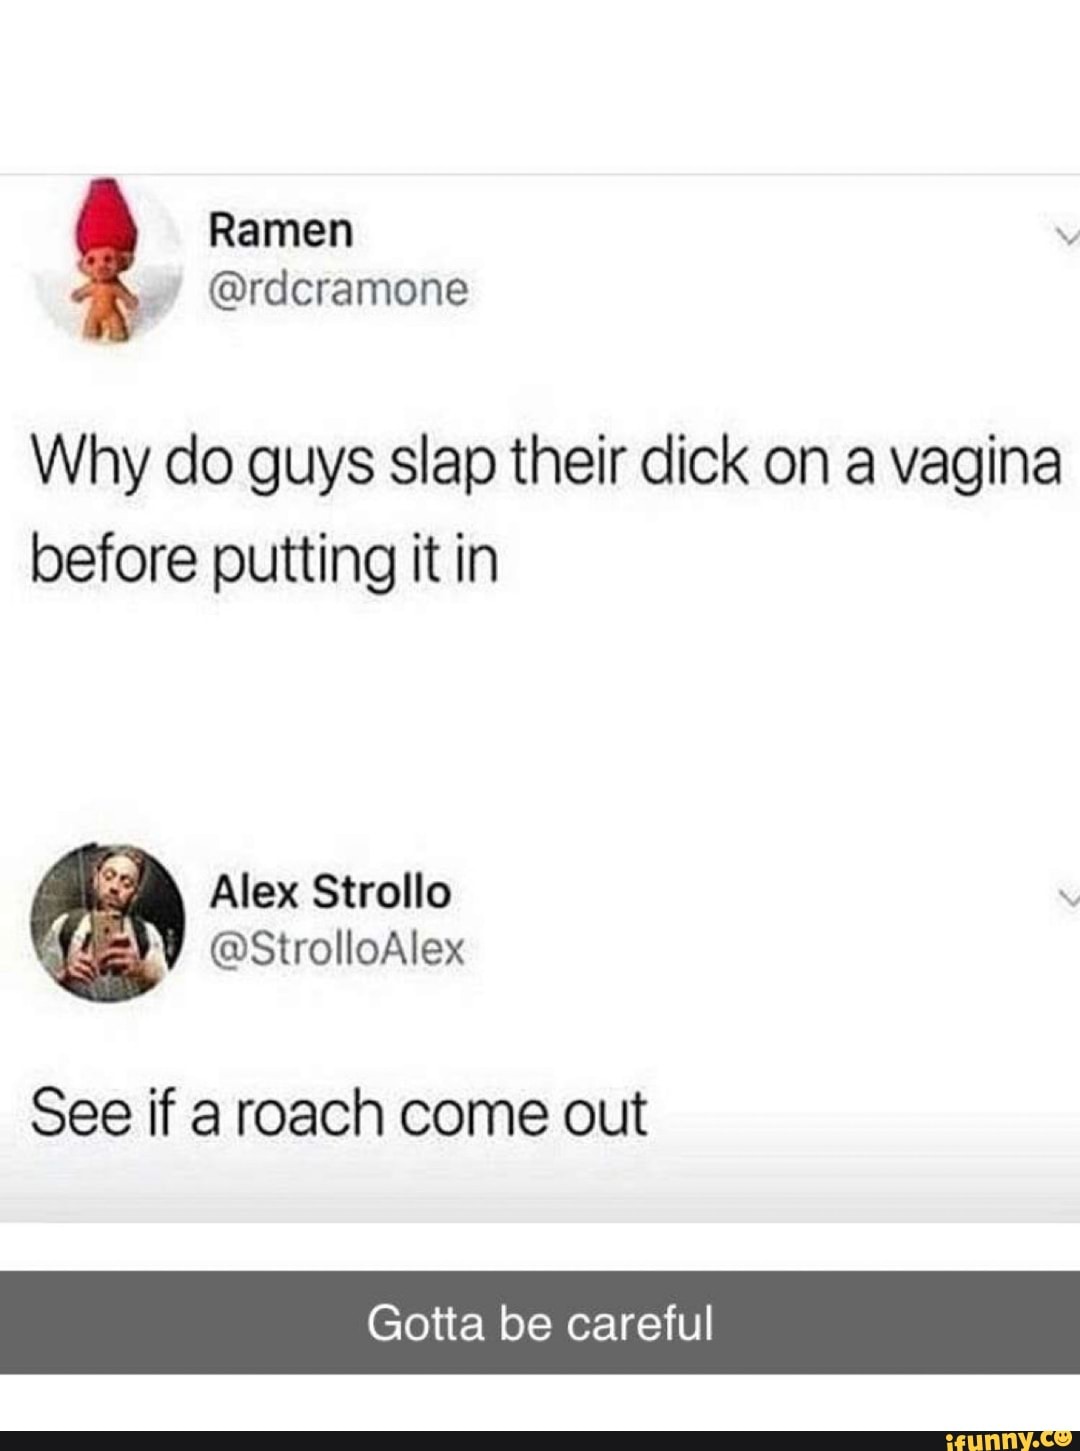 Why do guys slap their dicks with their hand